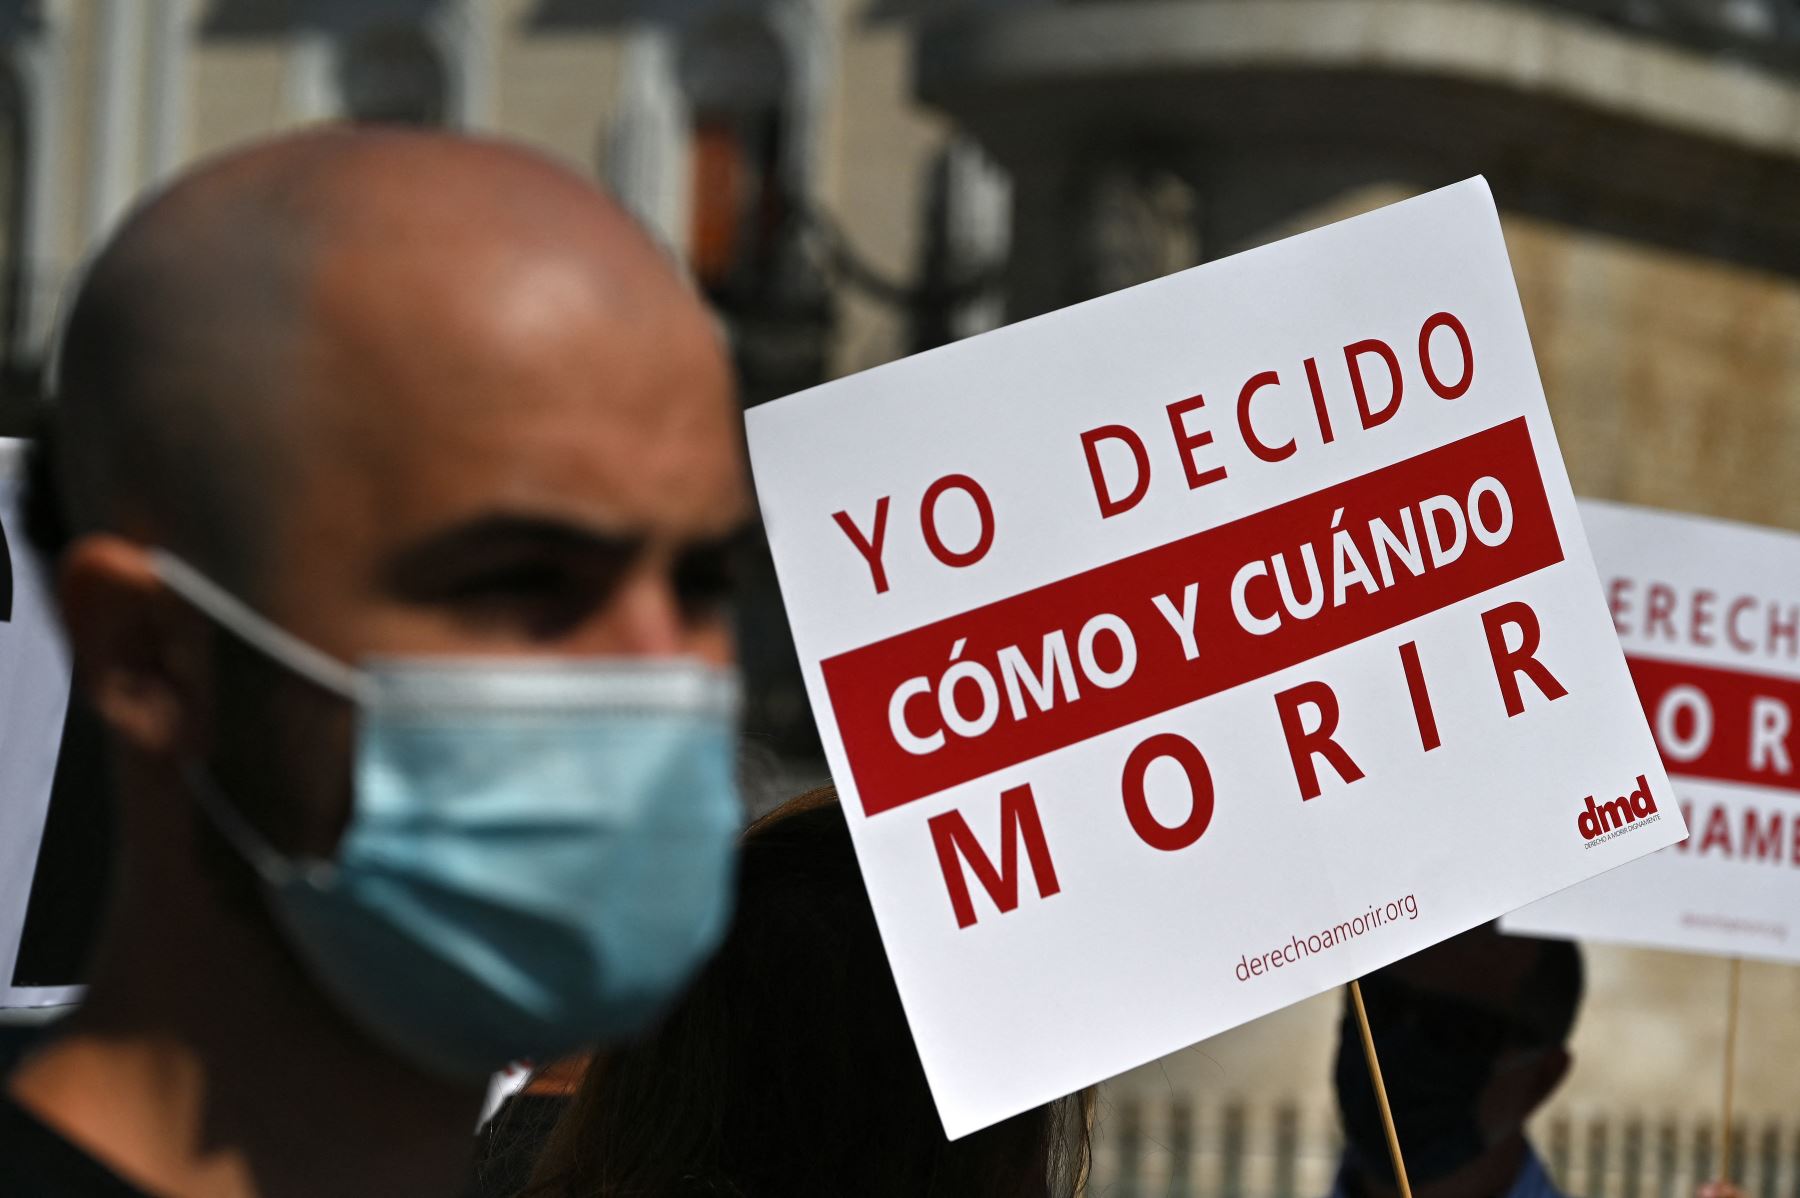 Constitucional de Colombia amplía la eutanasia a enfermedades no terminales  | Noticias | Agencia Peruana de Noticias Andina